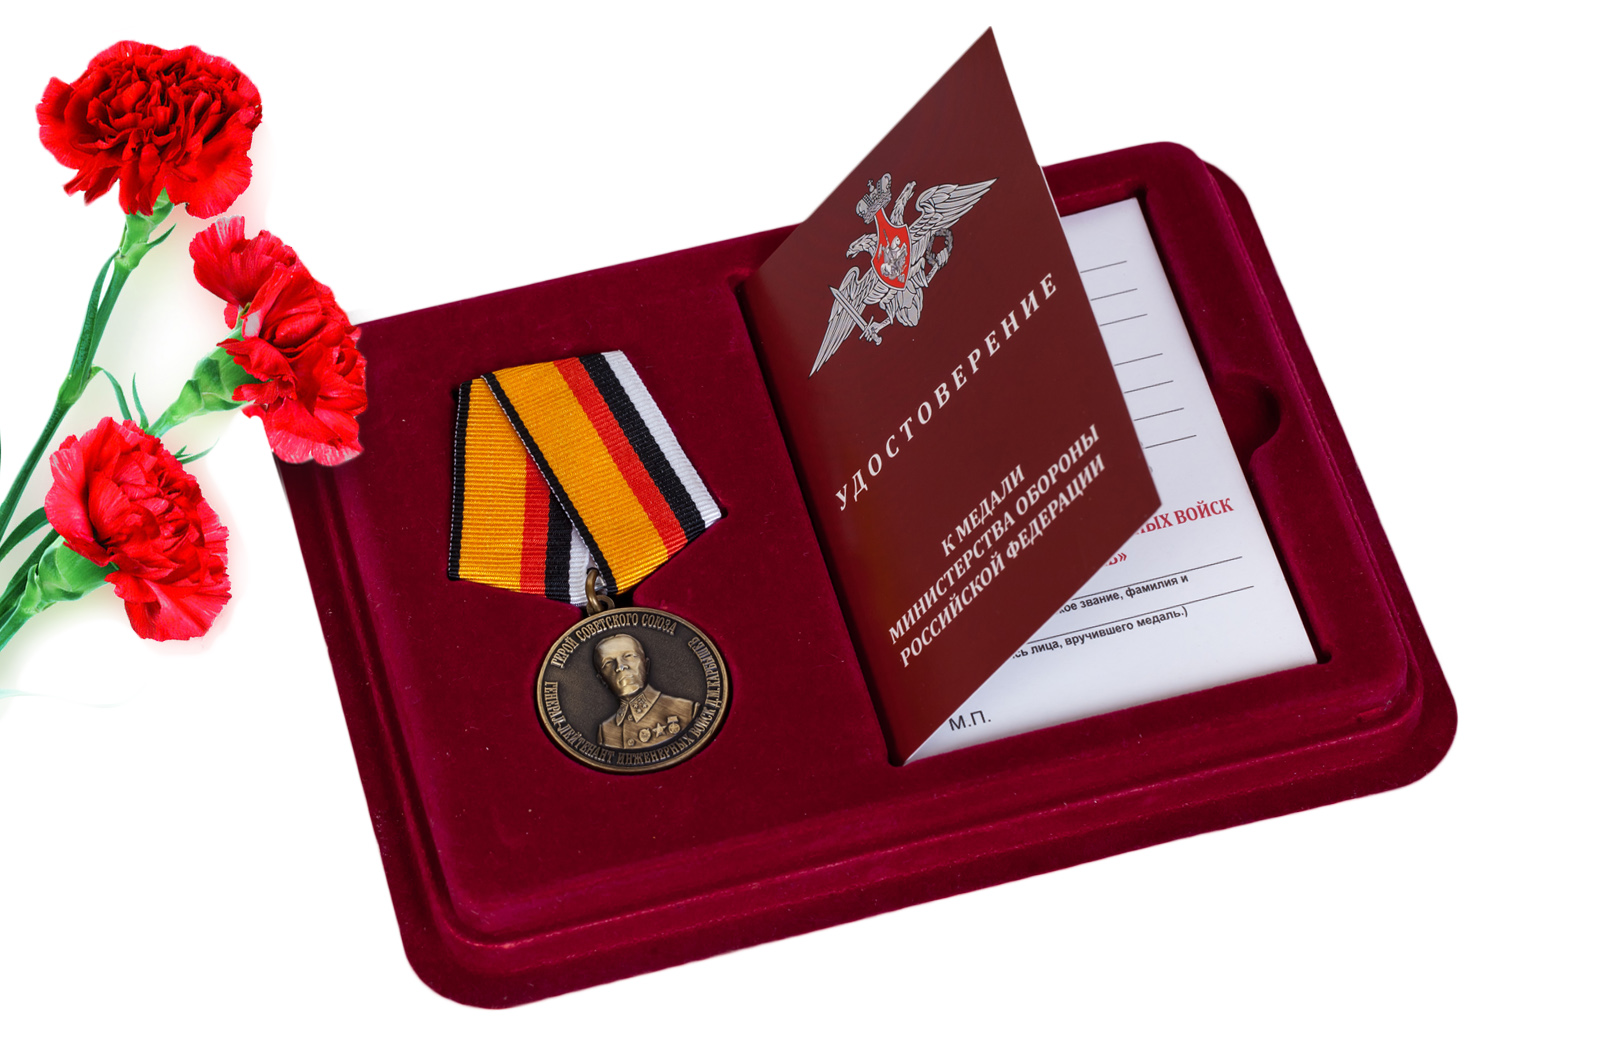 Купить памятную медаль Герой Советского Союза Генерал-лейтенант инженерных войск Карбышев Д.М. в подарок